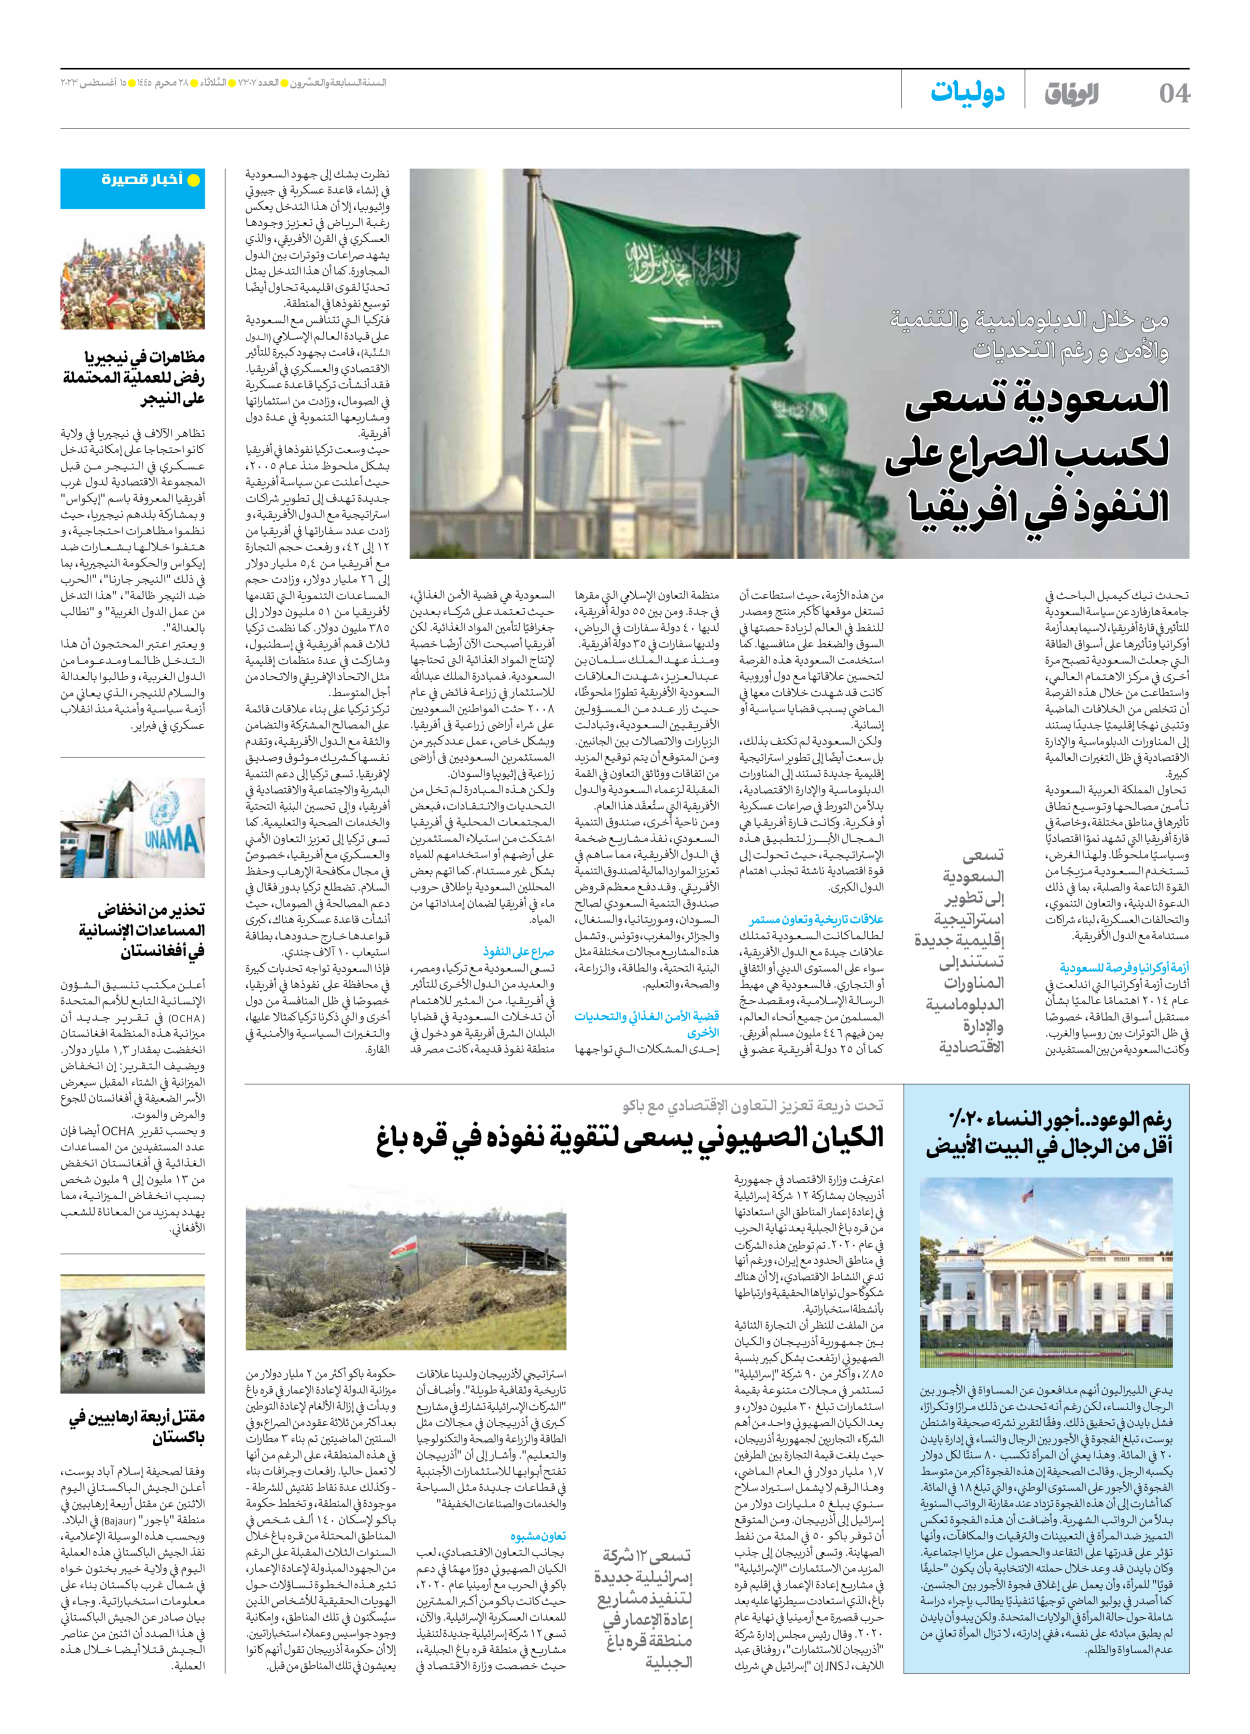 صحیفة ایران الدولیة الوفاق - العدد سبعة آلاف وثلاثمائة وسبعة - ١٤ أغسطس ٢٠٢٣ - الصفحة ٤